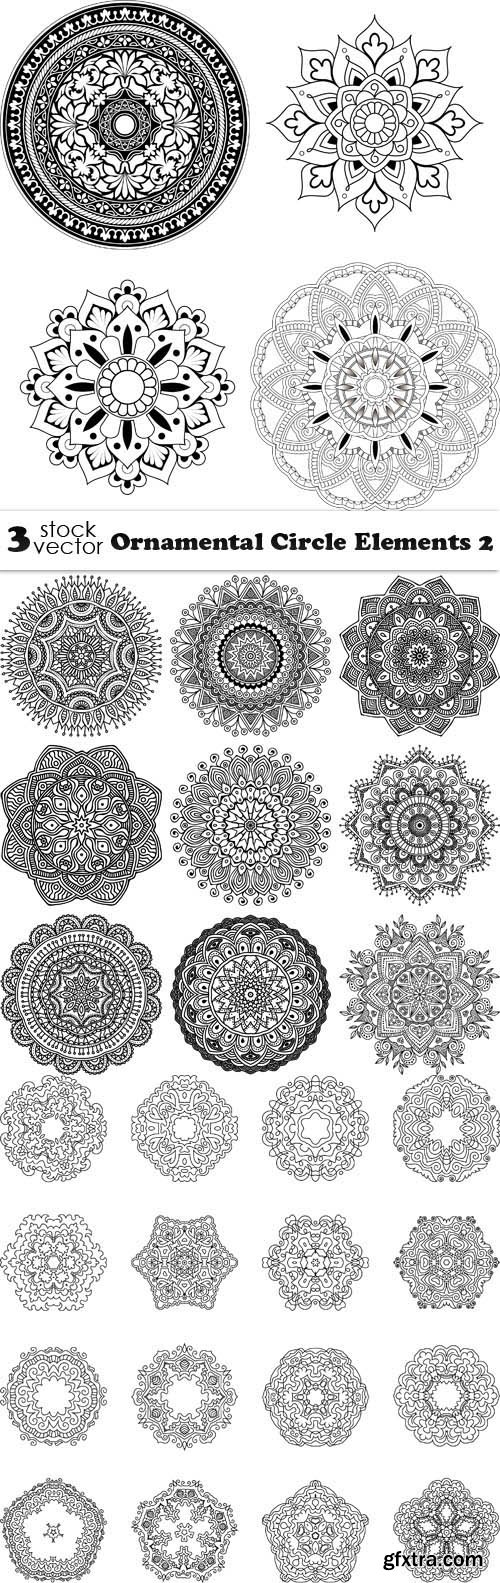 Vectors - Ornamental Circle Elements 2